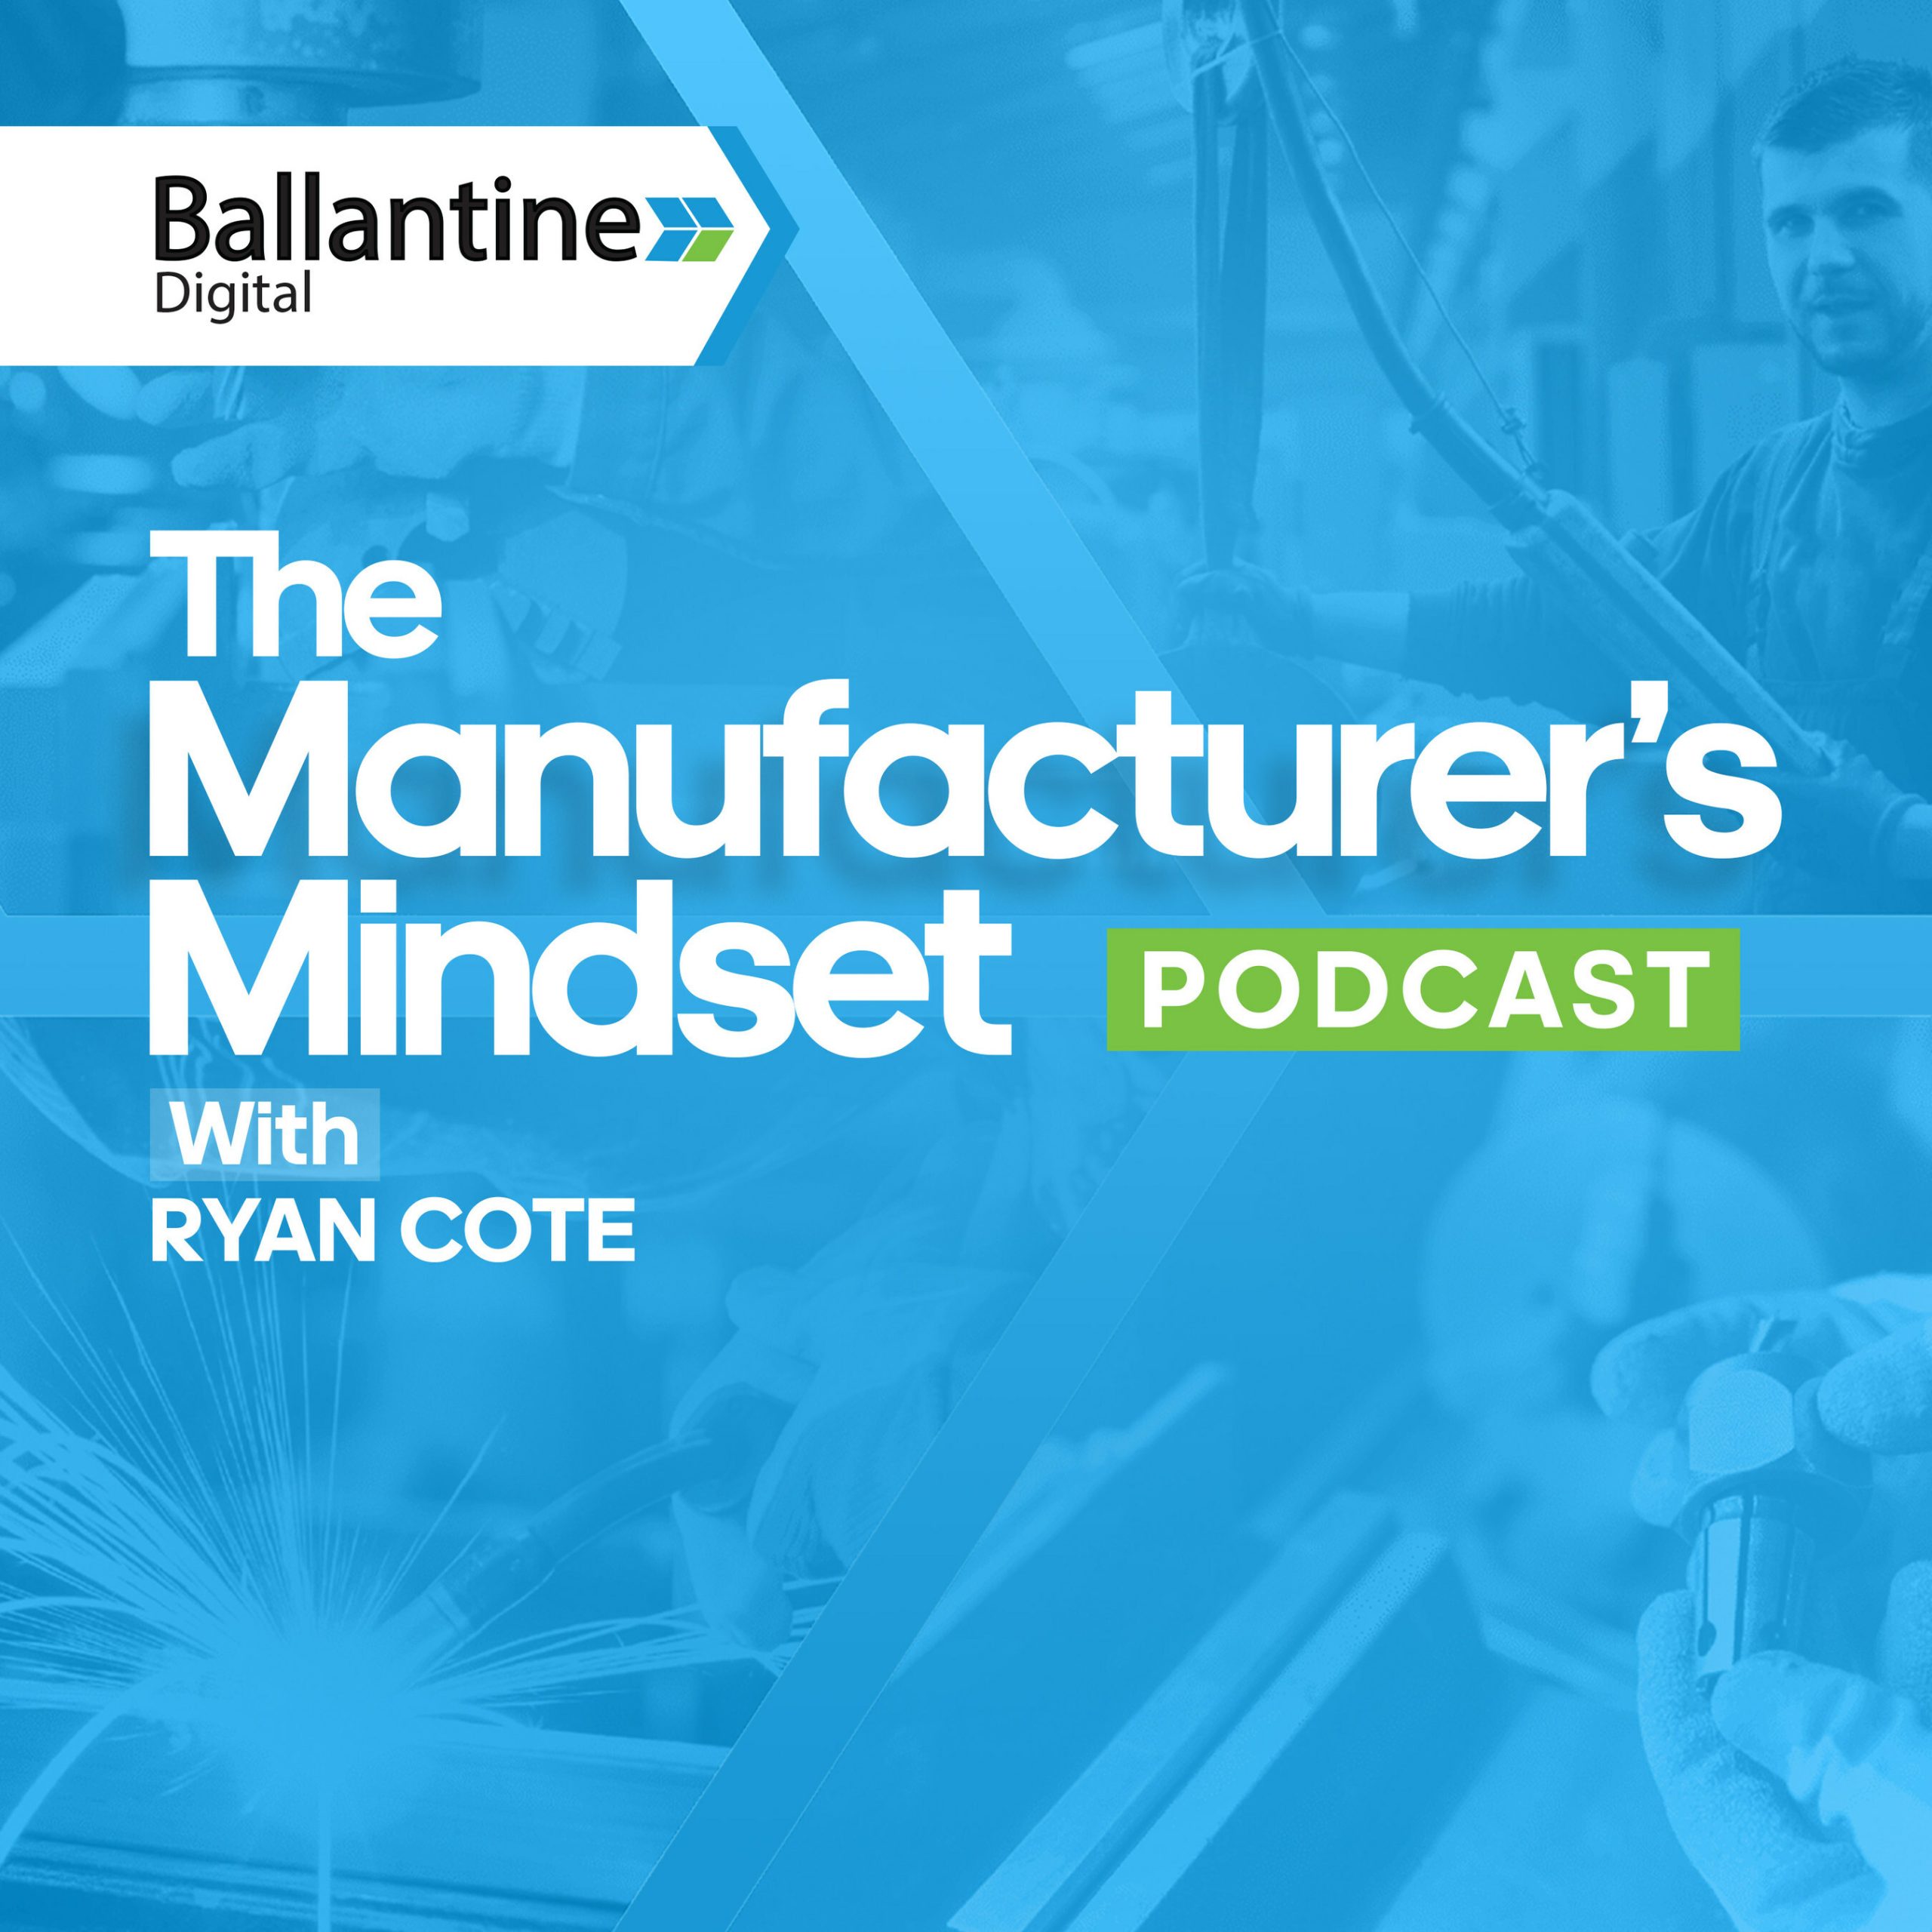 The Manufacturer's Mindset Podcast